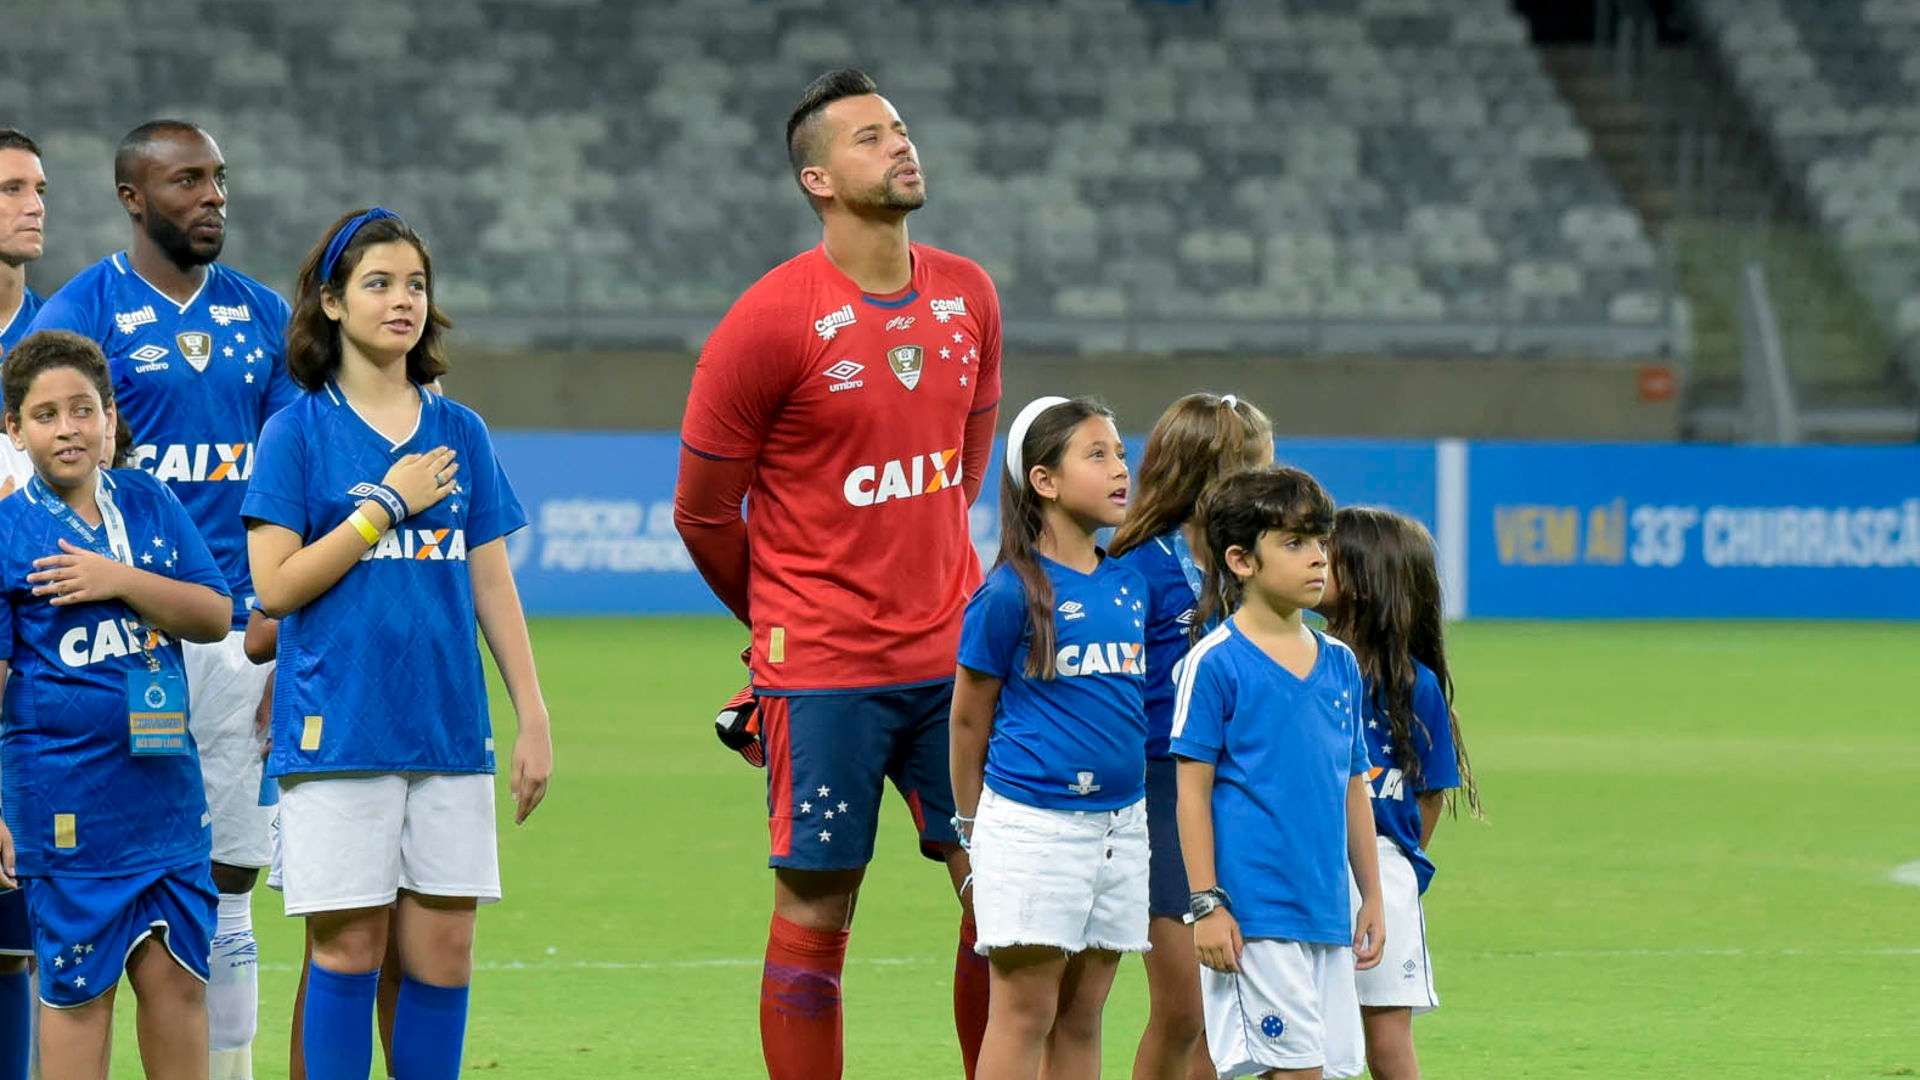 Fabio Cruzeiro 2018